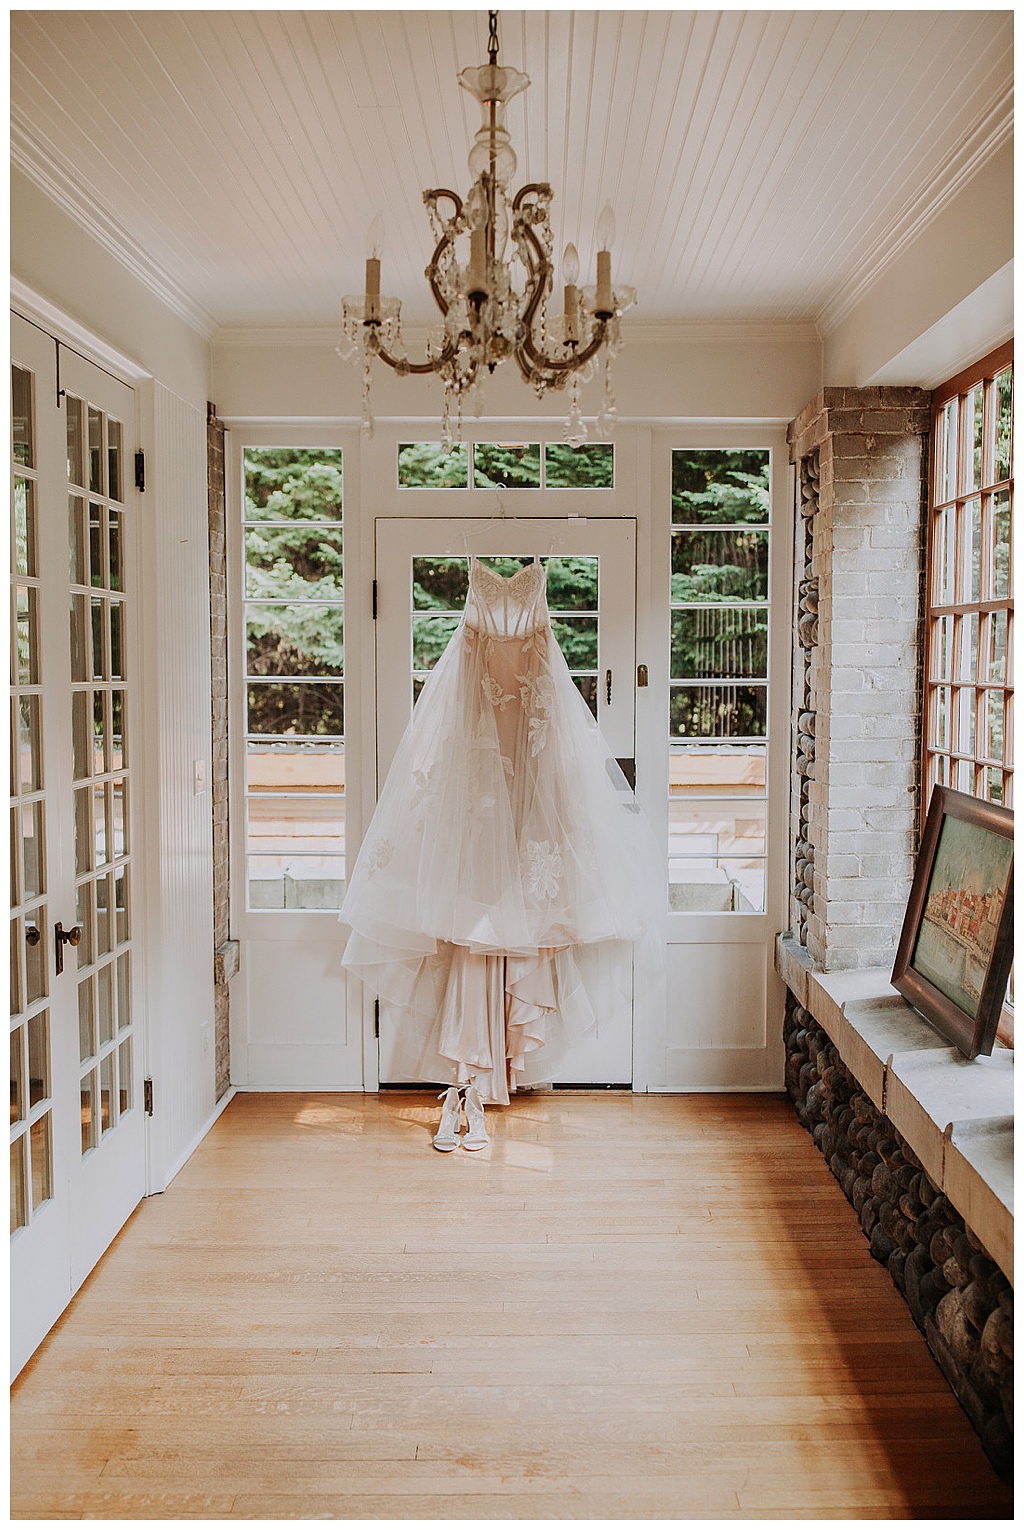 the bride's wedding dress hangs from a doorway